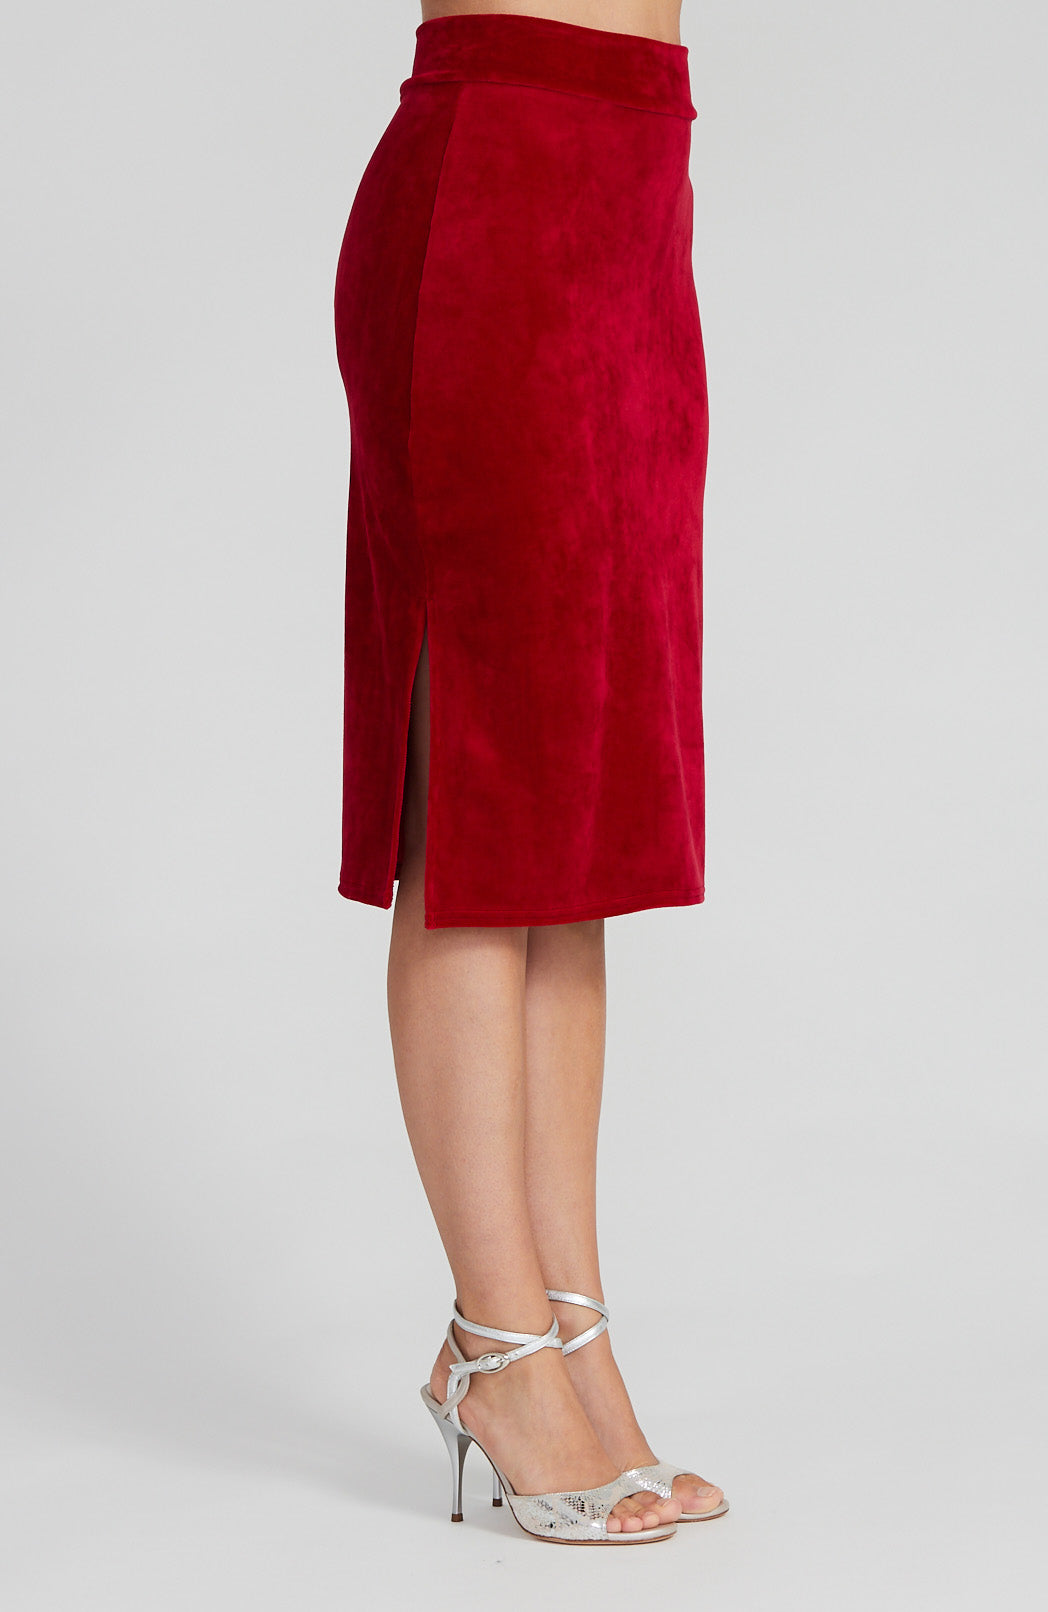 MIA - Classic Red Velvet Tango Skirt with Side Slits